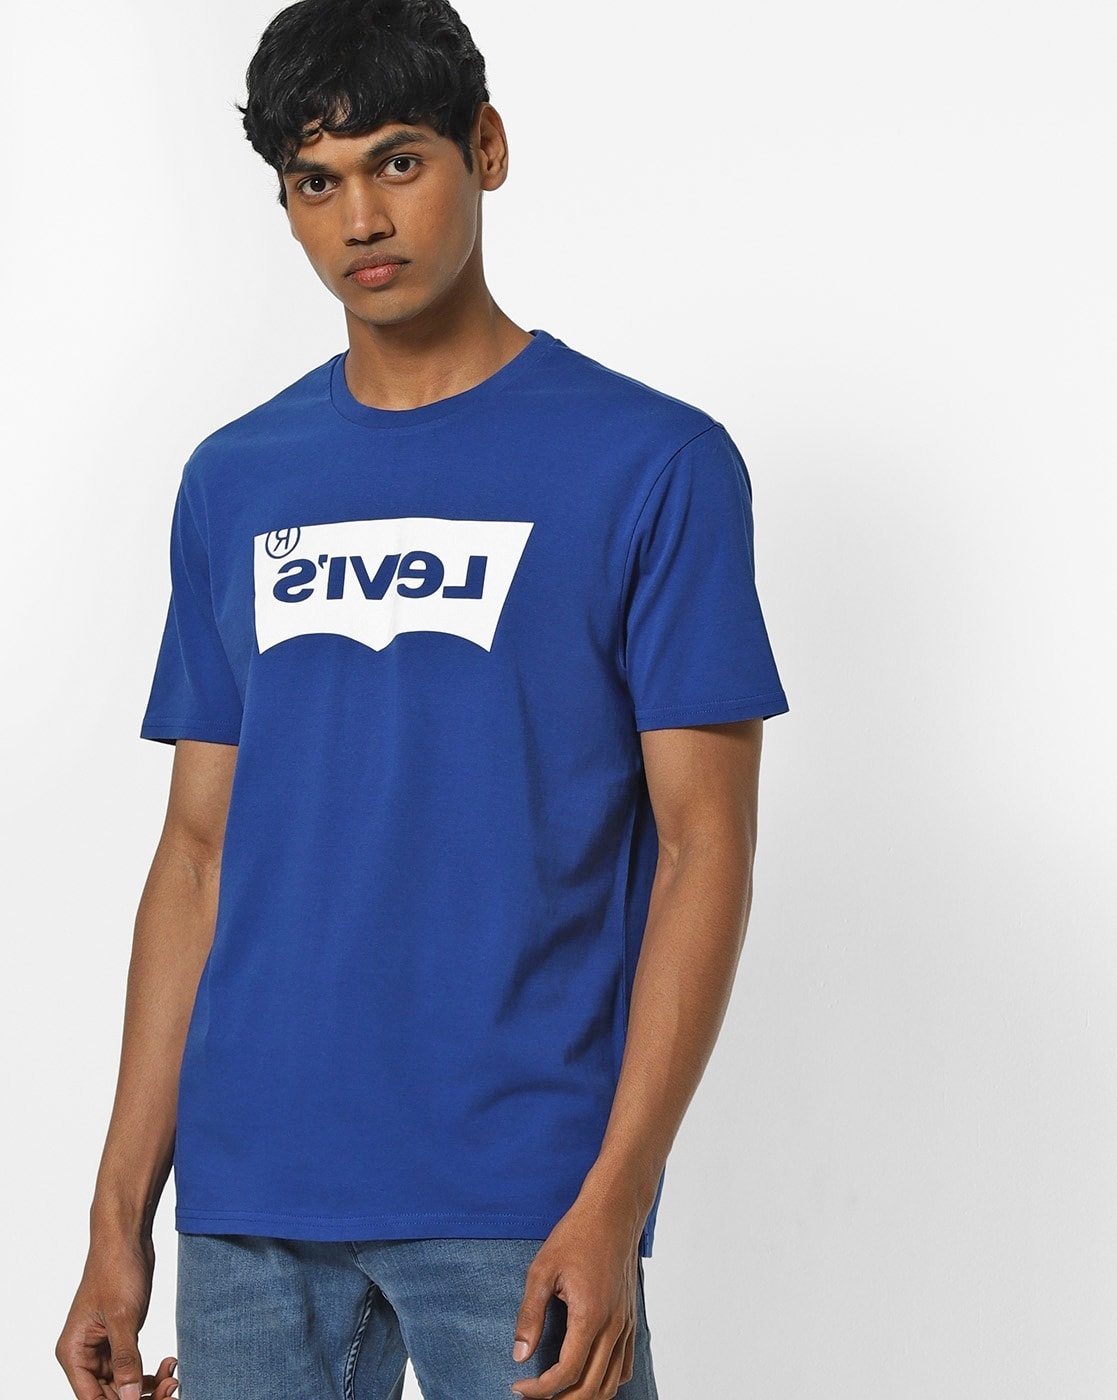 levis blue tshirt